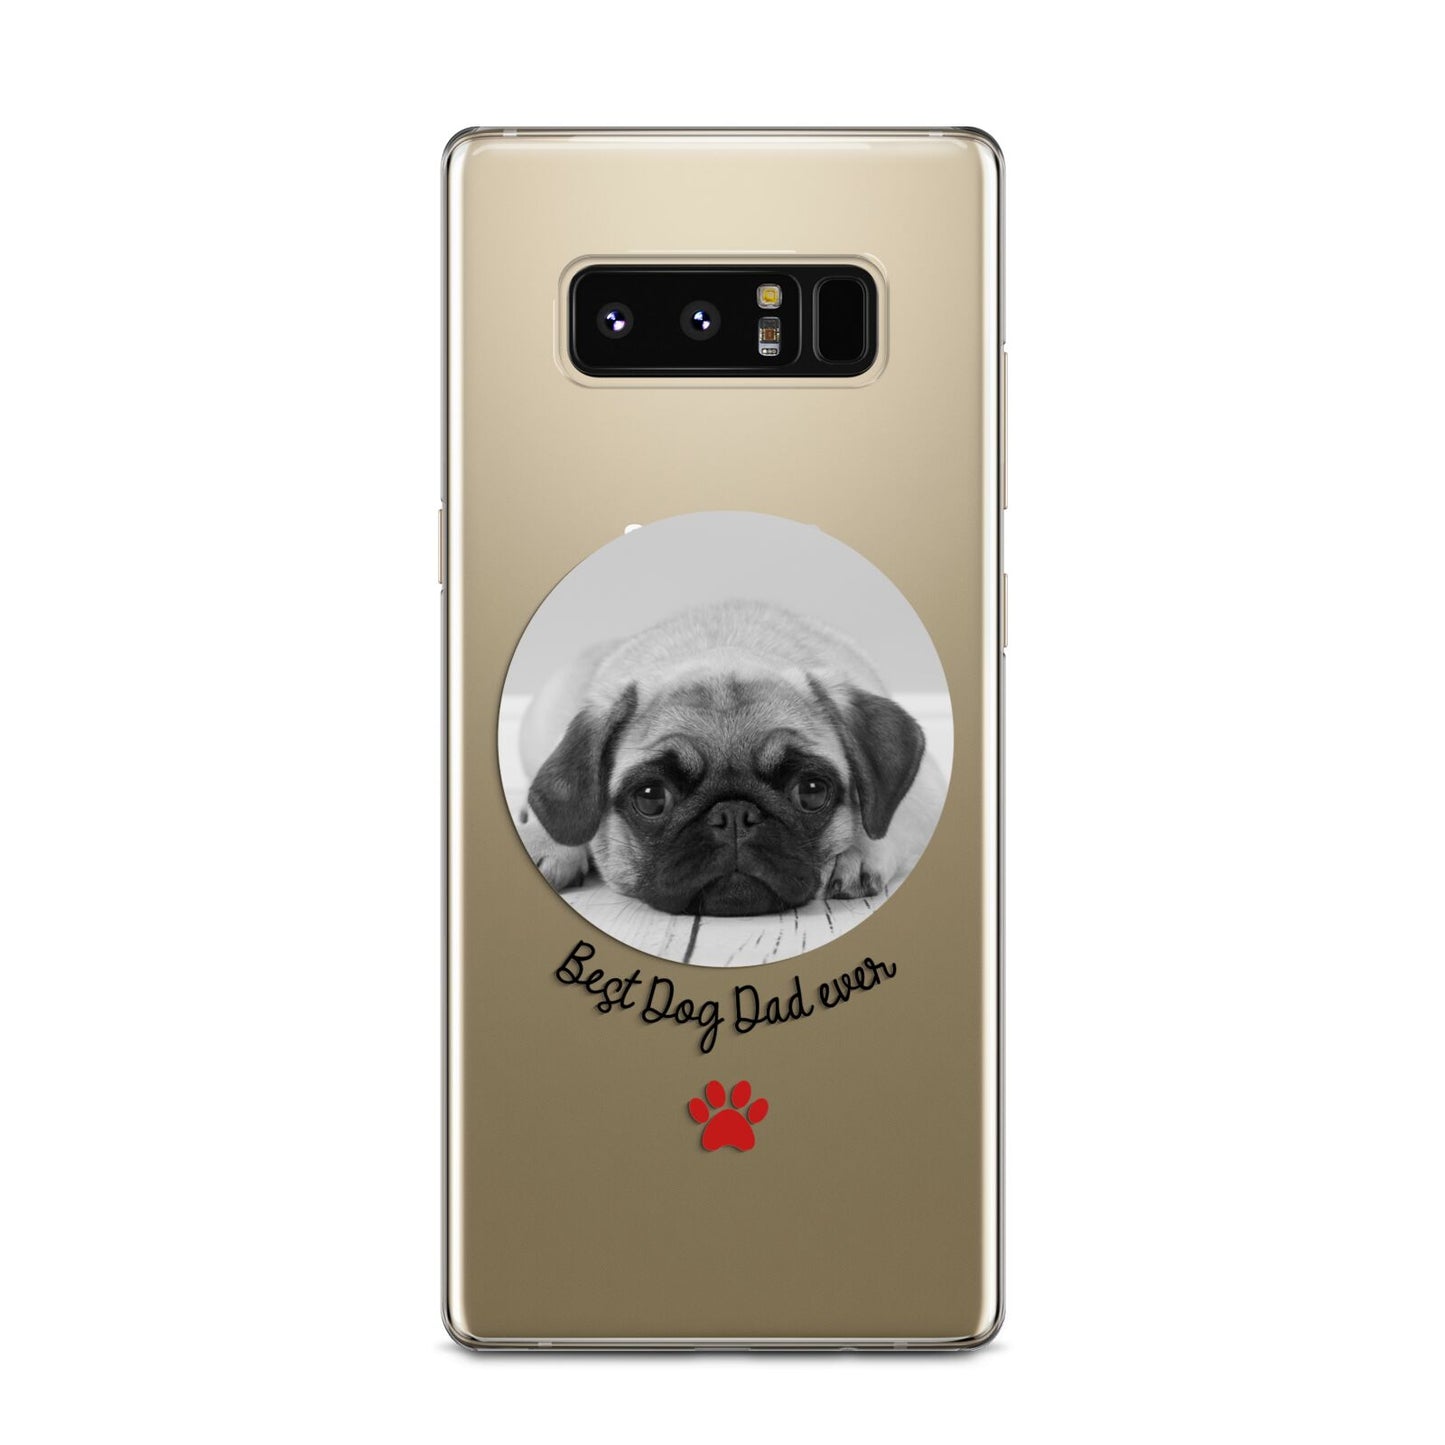 Best Dog Dad Ever Photo Upload Samsung Galaxy Note 8 Case